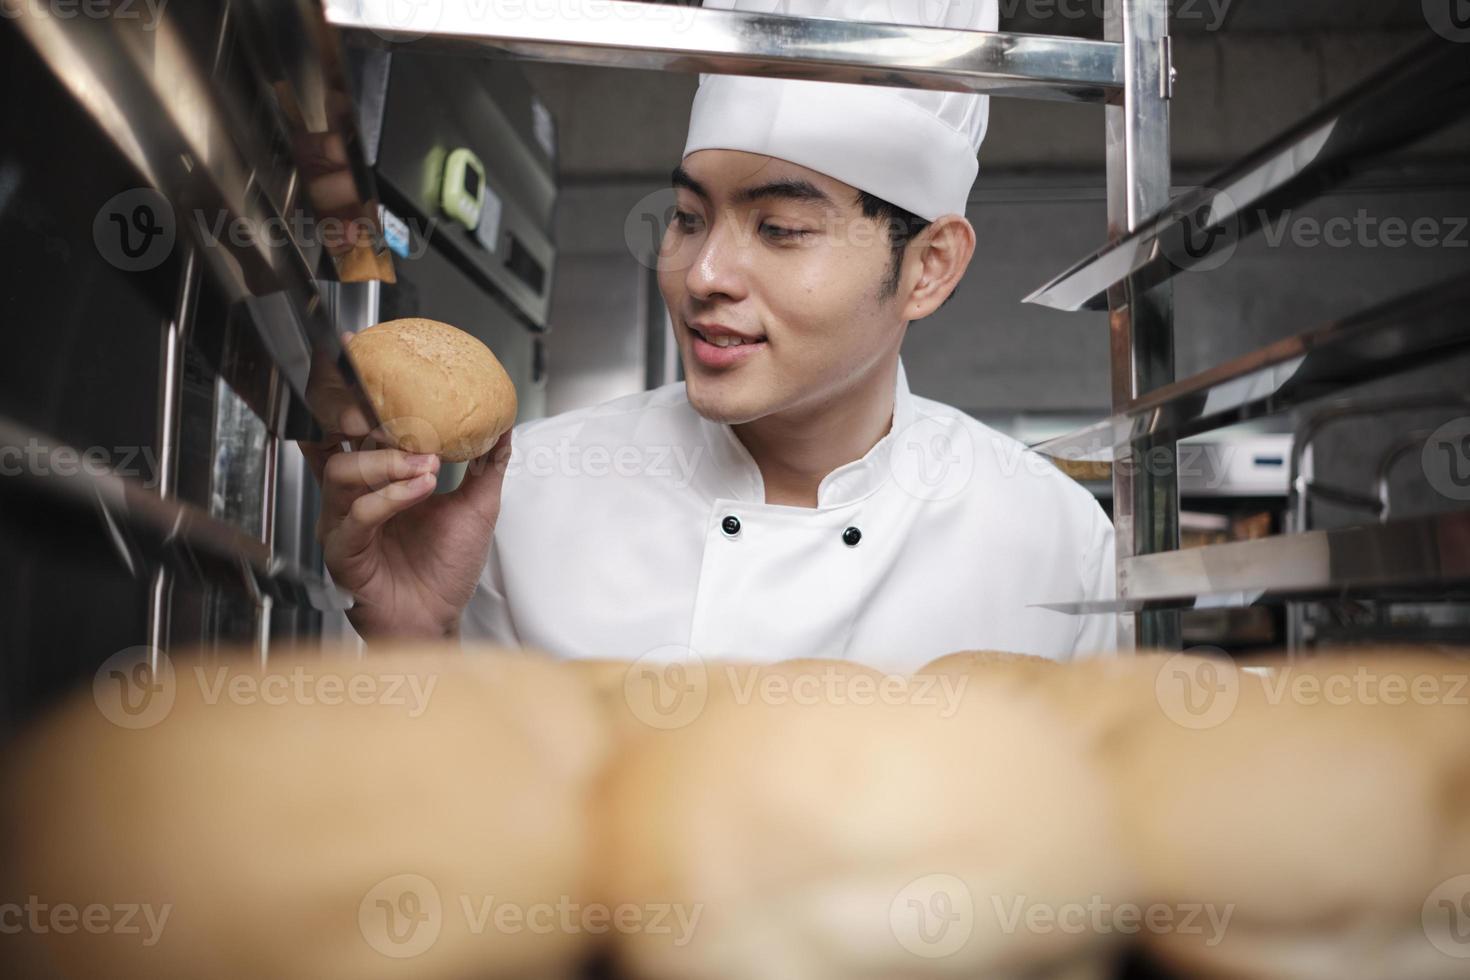 jovem chef masculino asiático em uniforme de cozinheiro branco e chapéu mostrando a bandeja de pão saboroso fresco com um sorriso, olhando para seu pão, feliz com seus produtos alimentícios assados, trabalho profissional na cozinha de aço inoxidável. foto